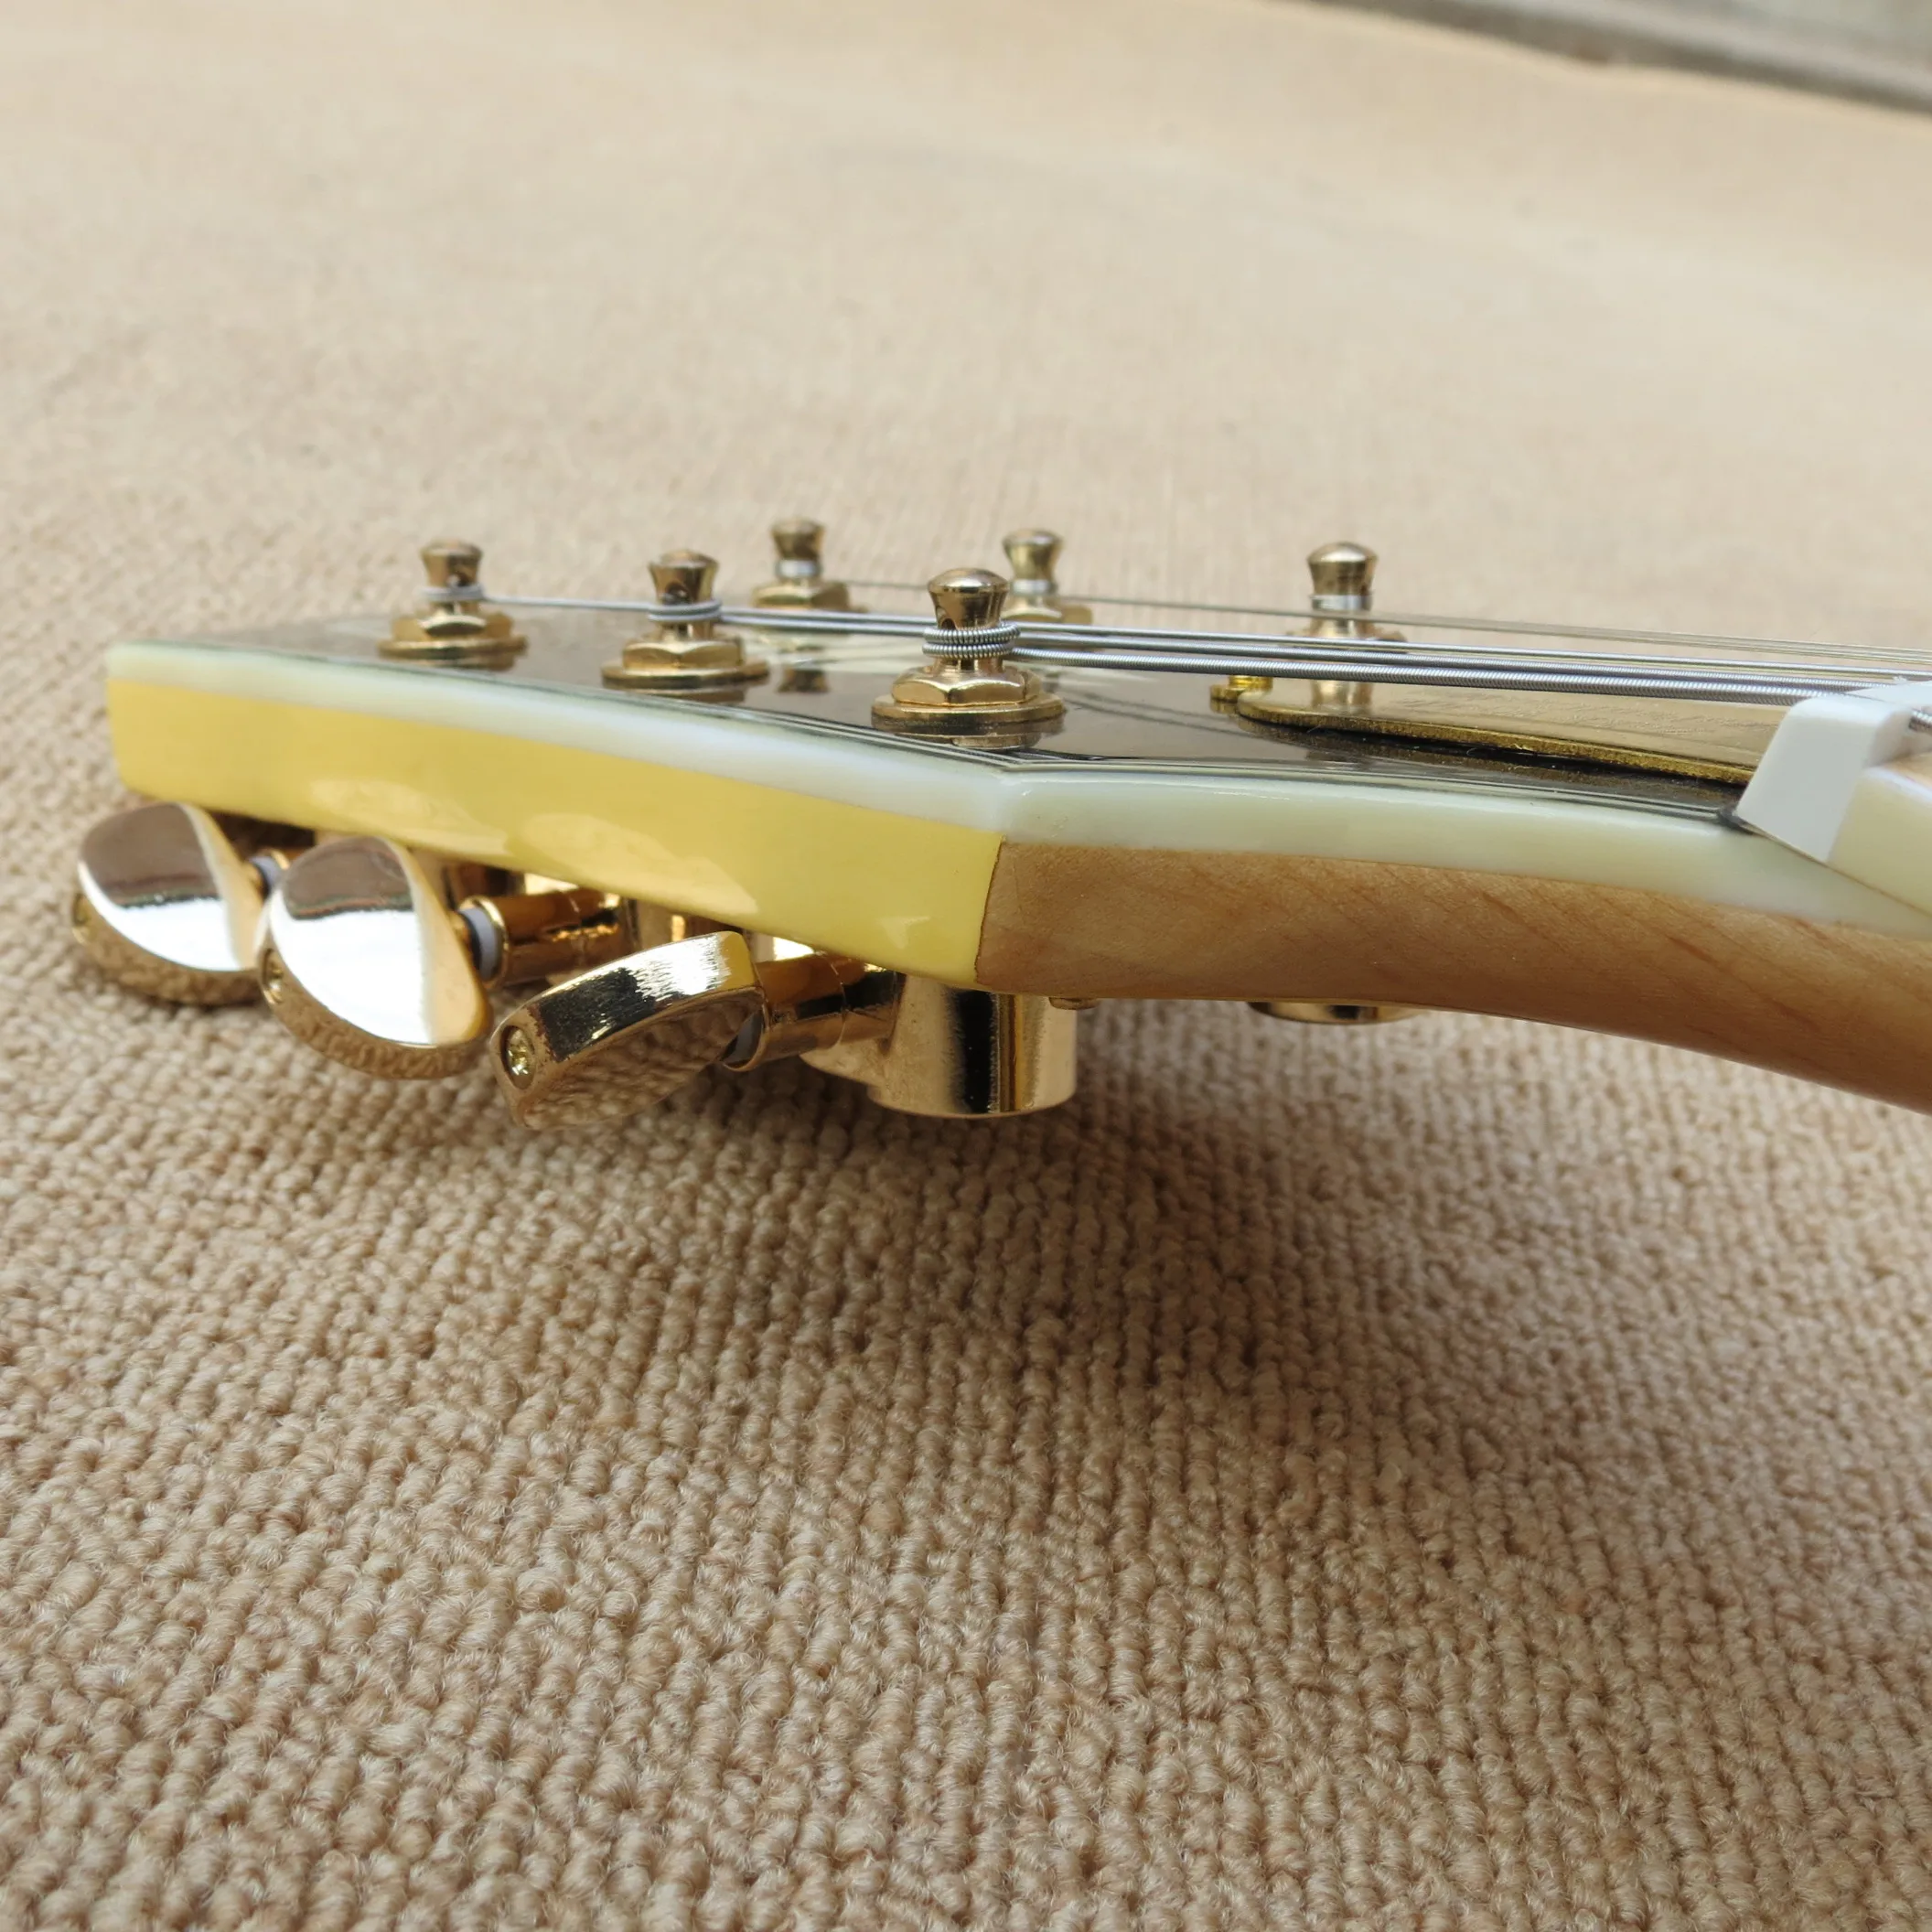 Электрогитара на заказ Zk гитара с золотым оборудованием и HH звукосниматели. Индивидуальные, paypal доступны! zk-2